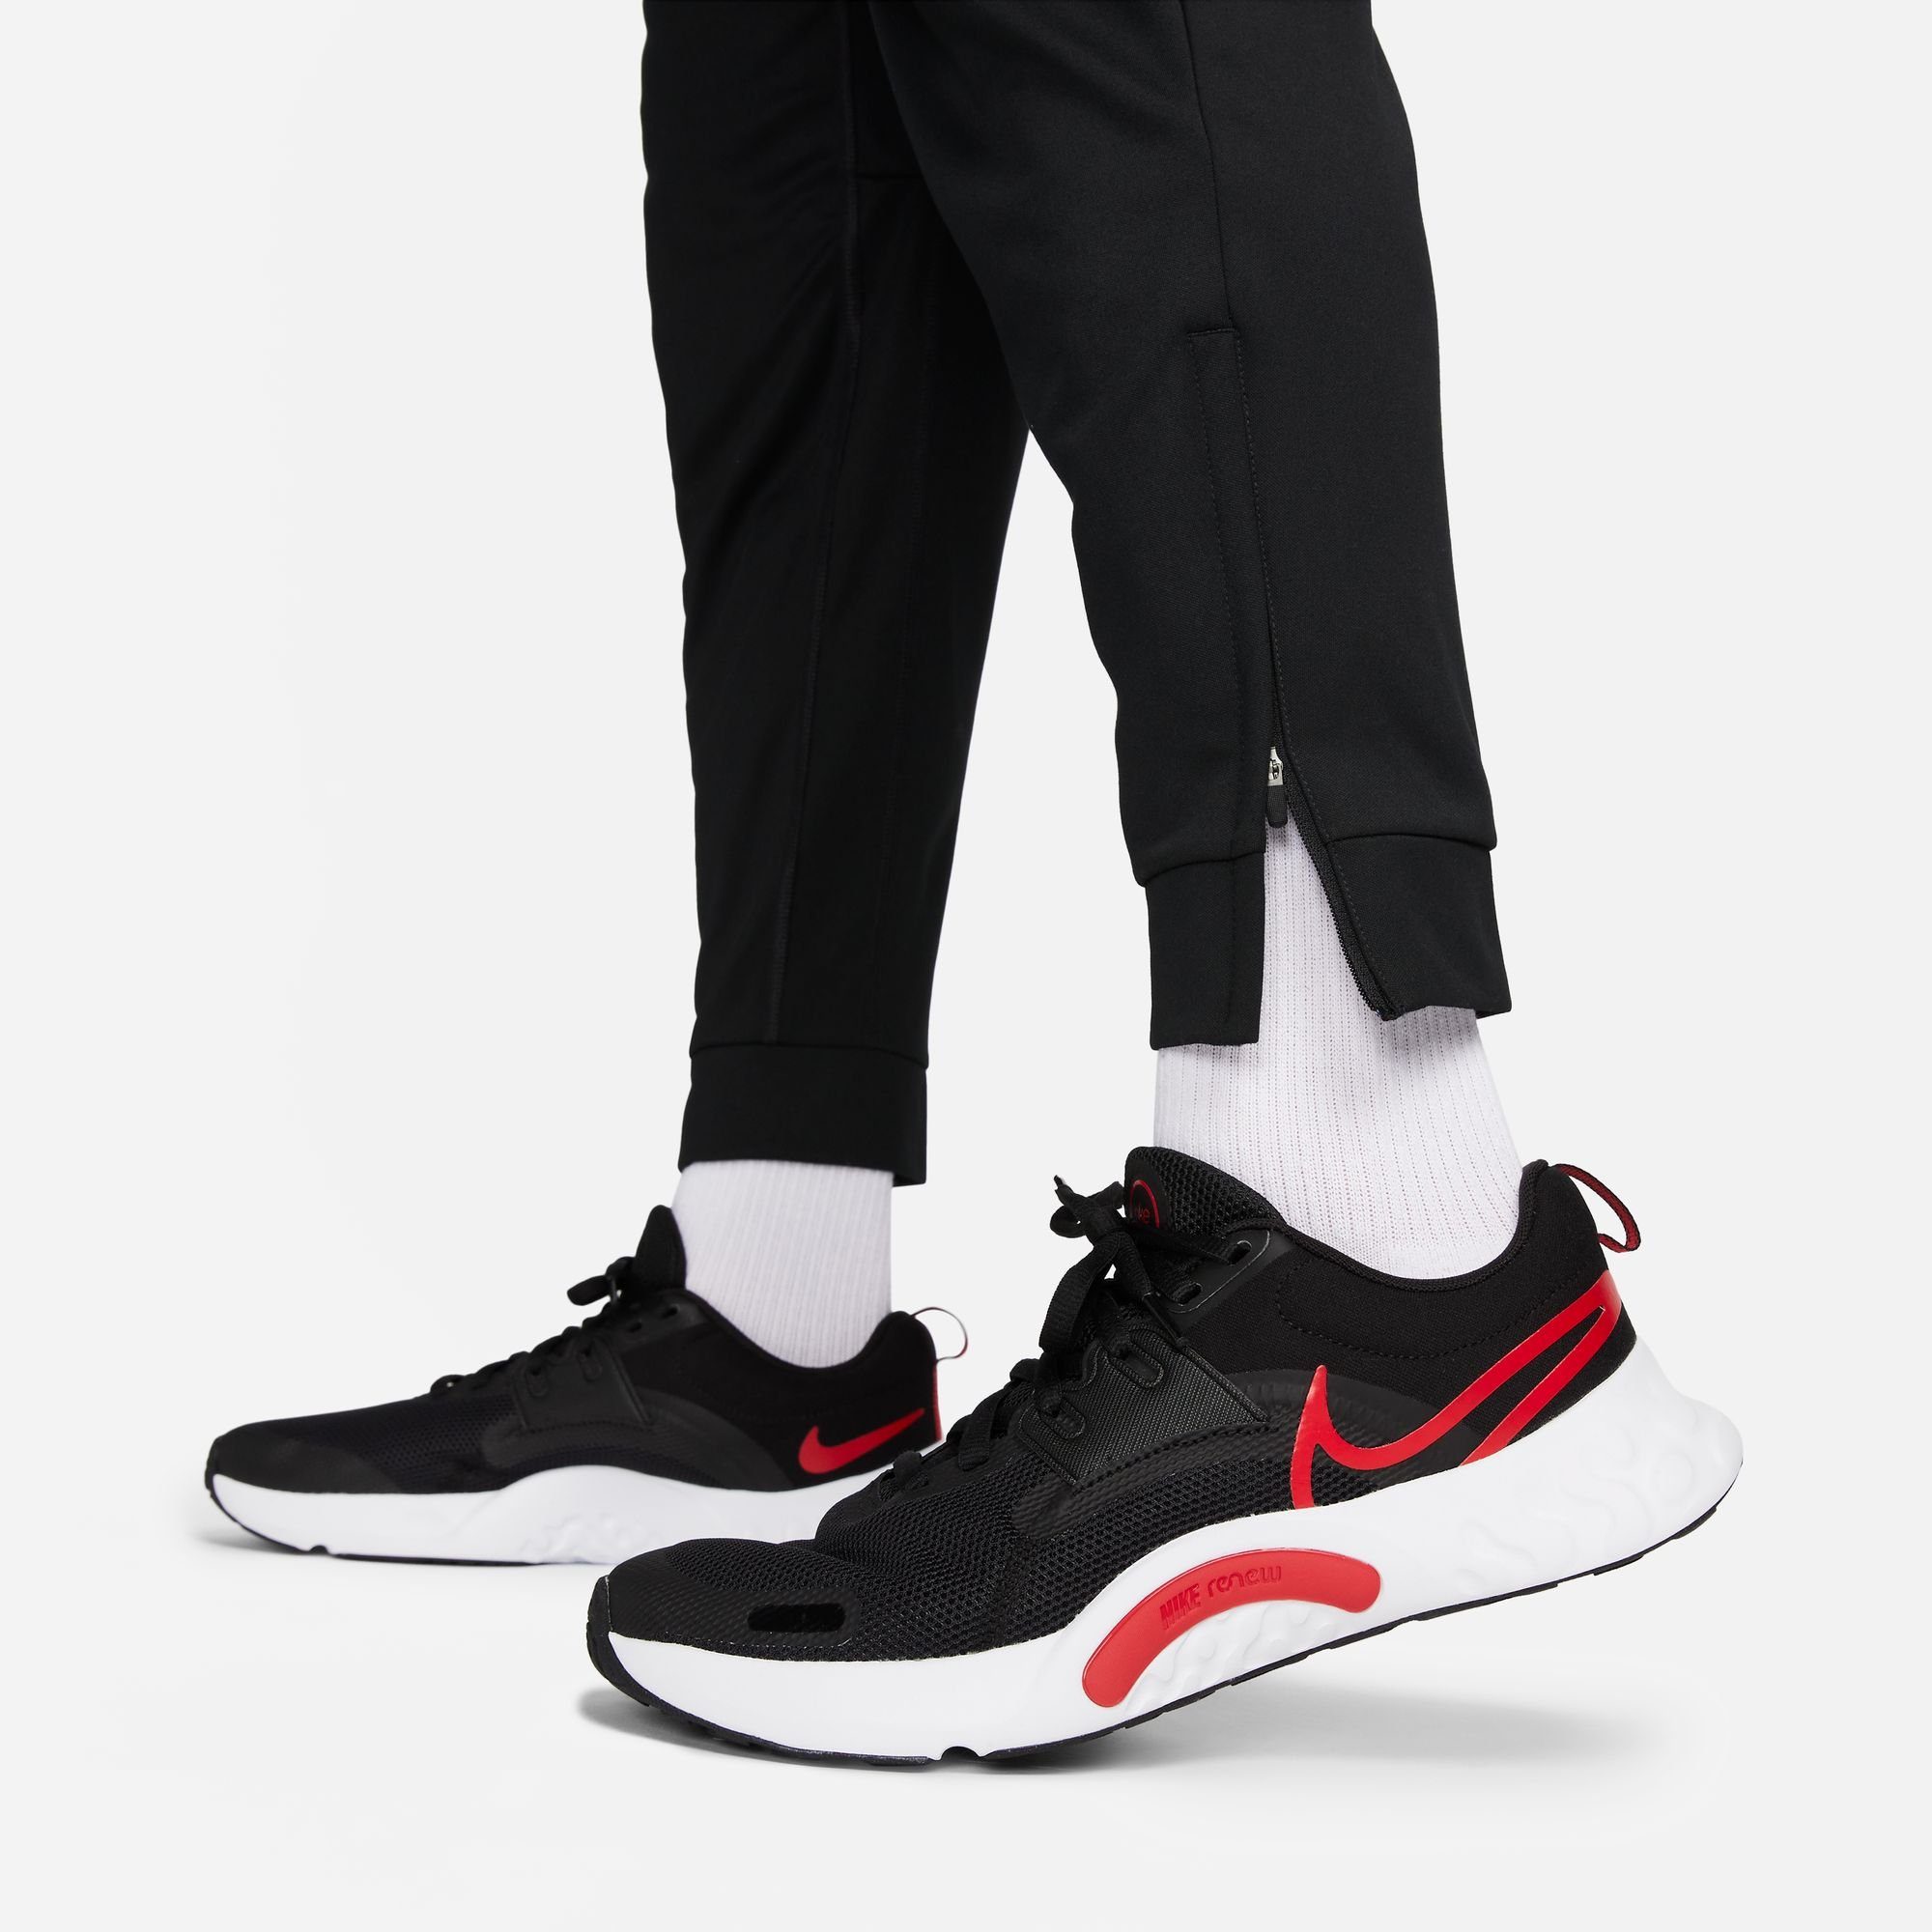 Nike PANTS BLACK/WHITE TAPERED TOTALITY MEN'S Trainingshose FITNESS DRI-FIT